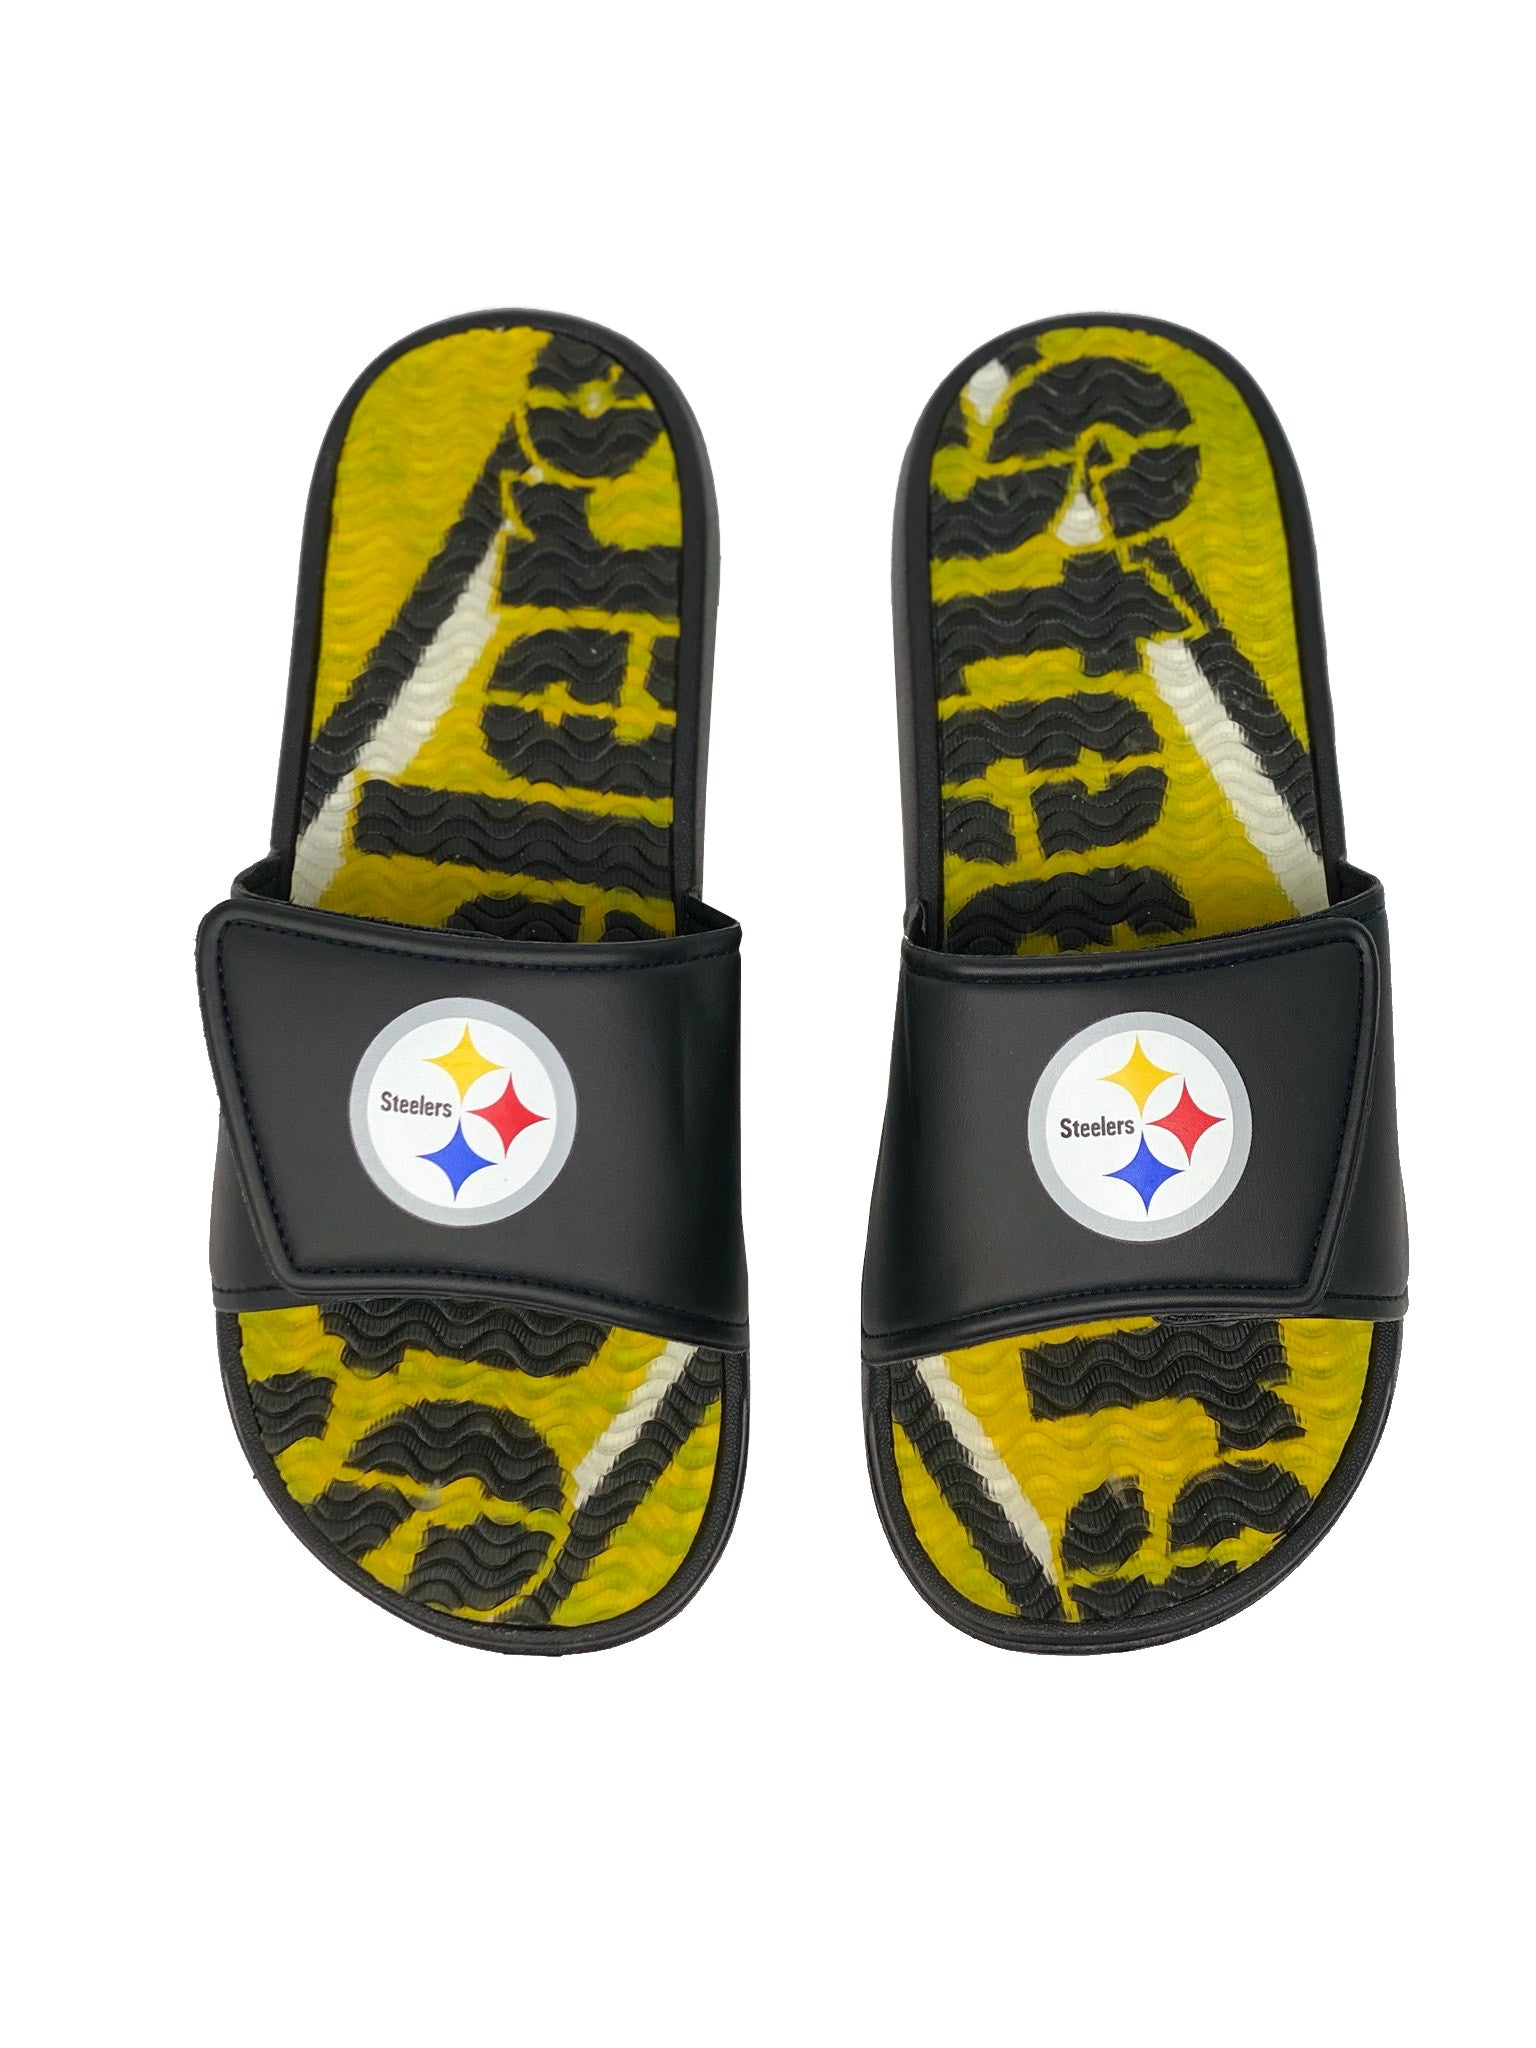 Pittsburgh Steelers Men's Gel Slides 20 / XL